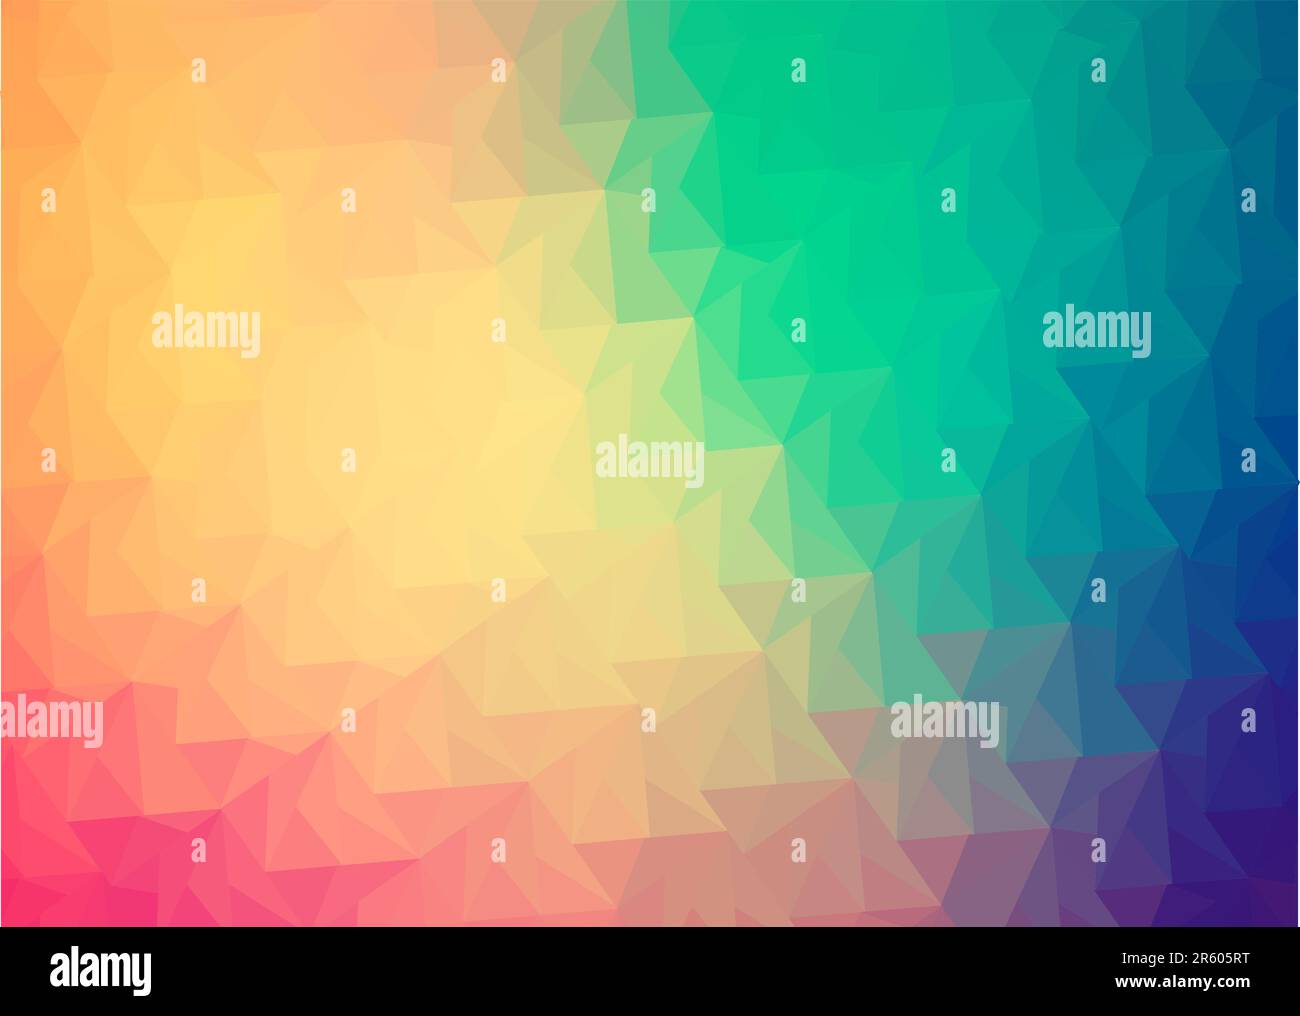 Abstrakte Regenbogen Hintergrund, bestehend aus farbigen Dreiecke Stock Vektor